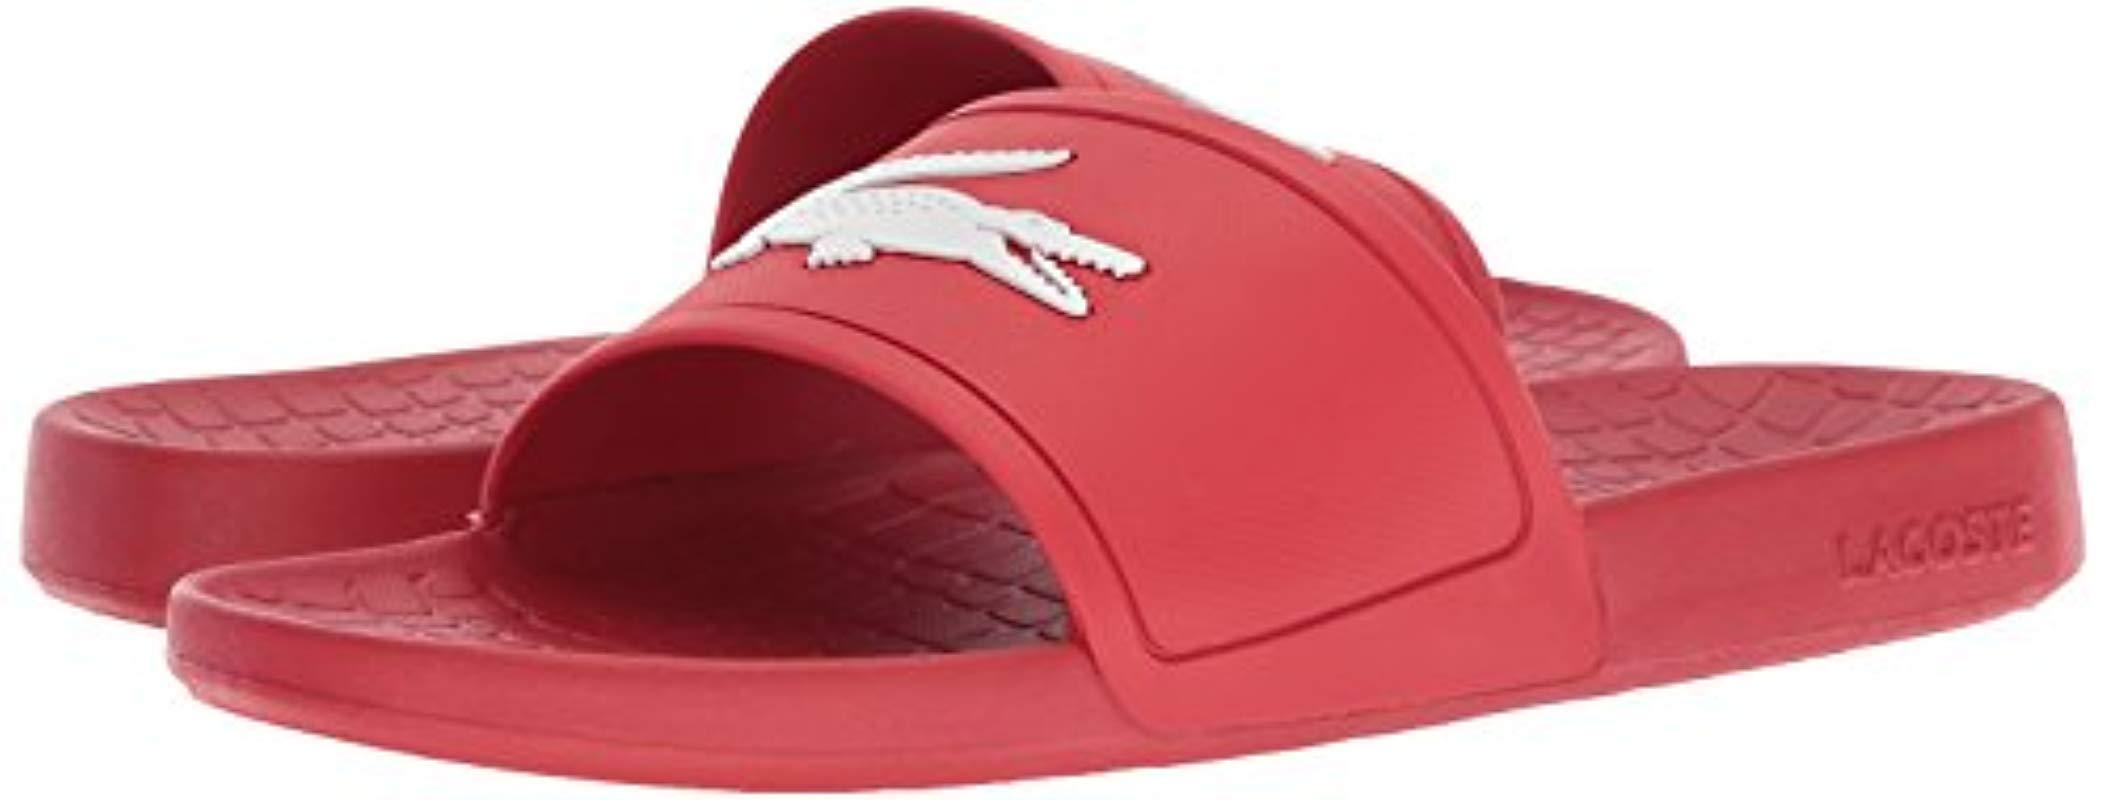 lacoste fraisier 318 1 slide sandal